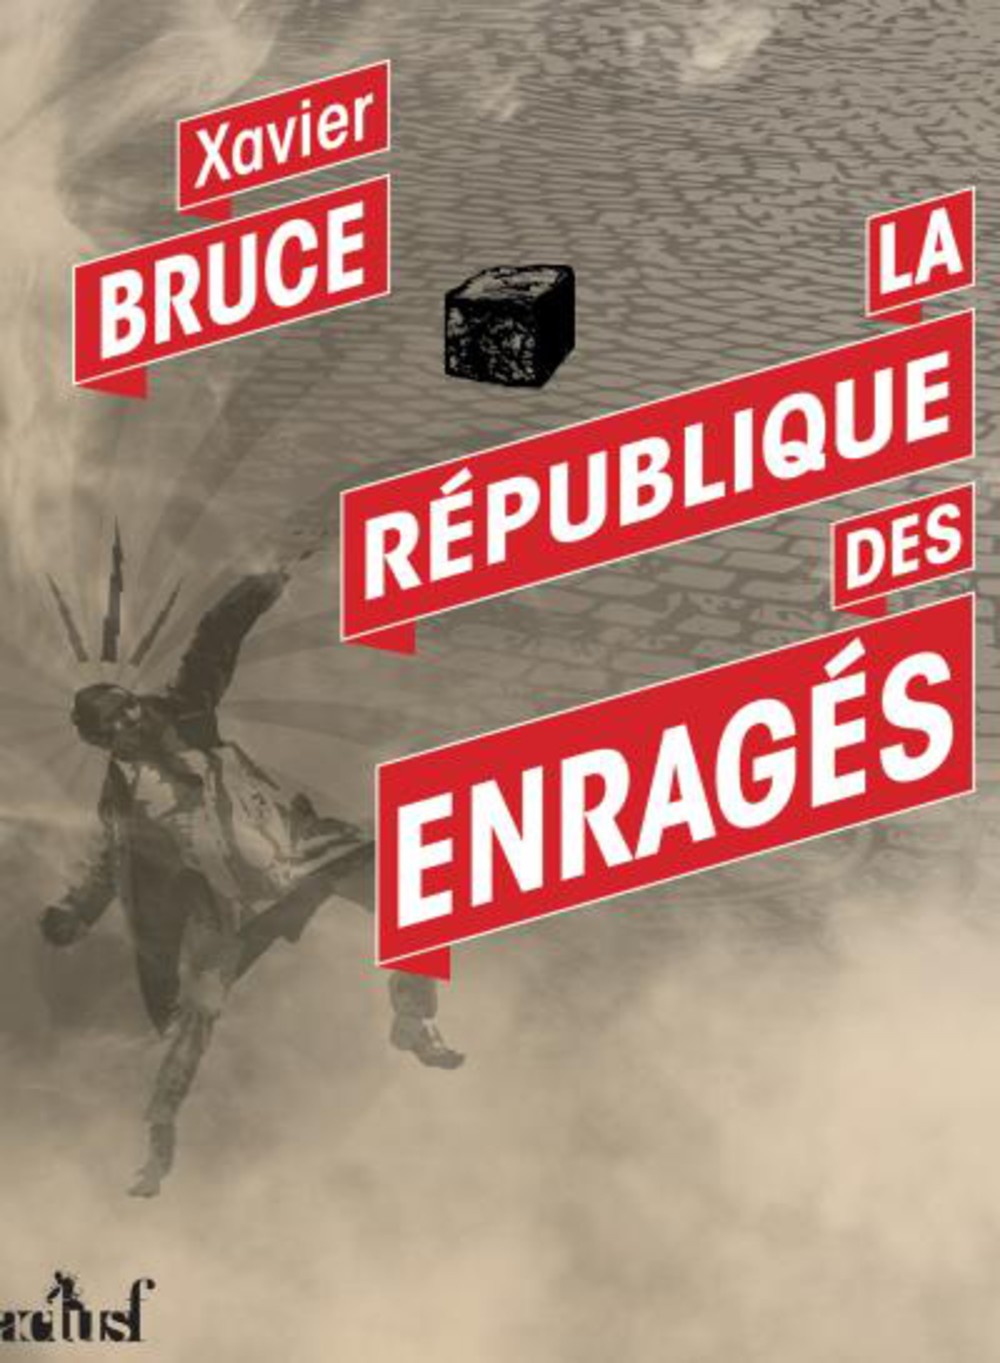 "La République des Enragés", de Xavier Bruce